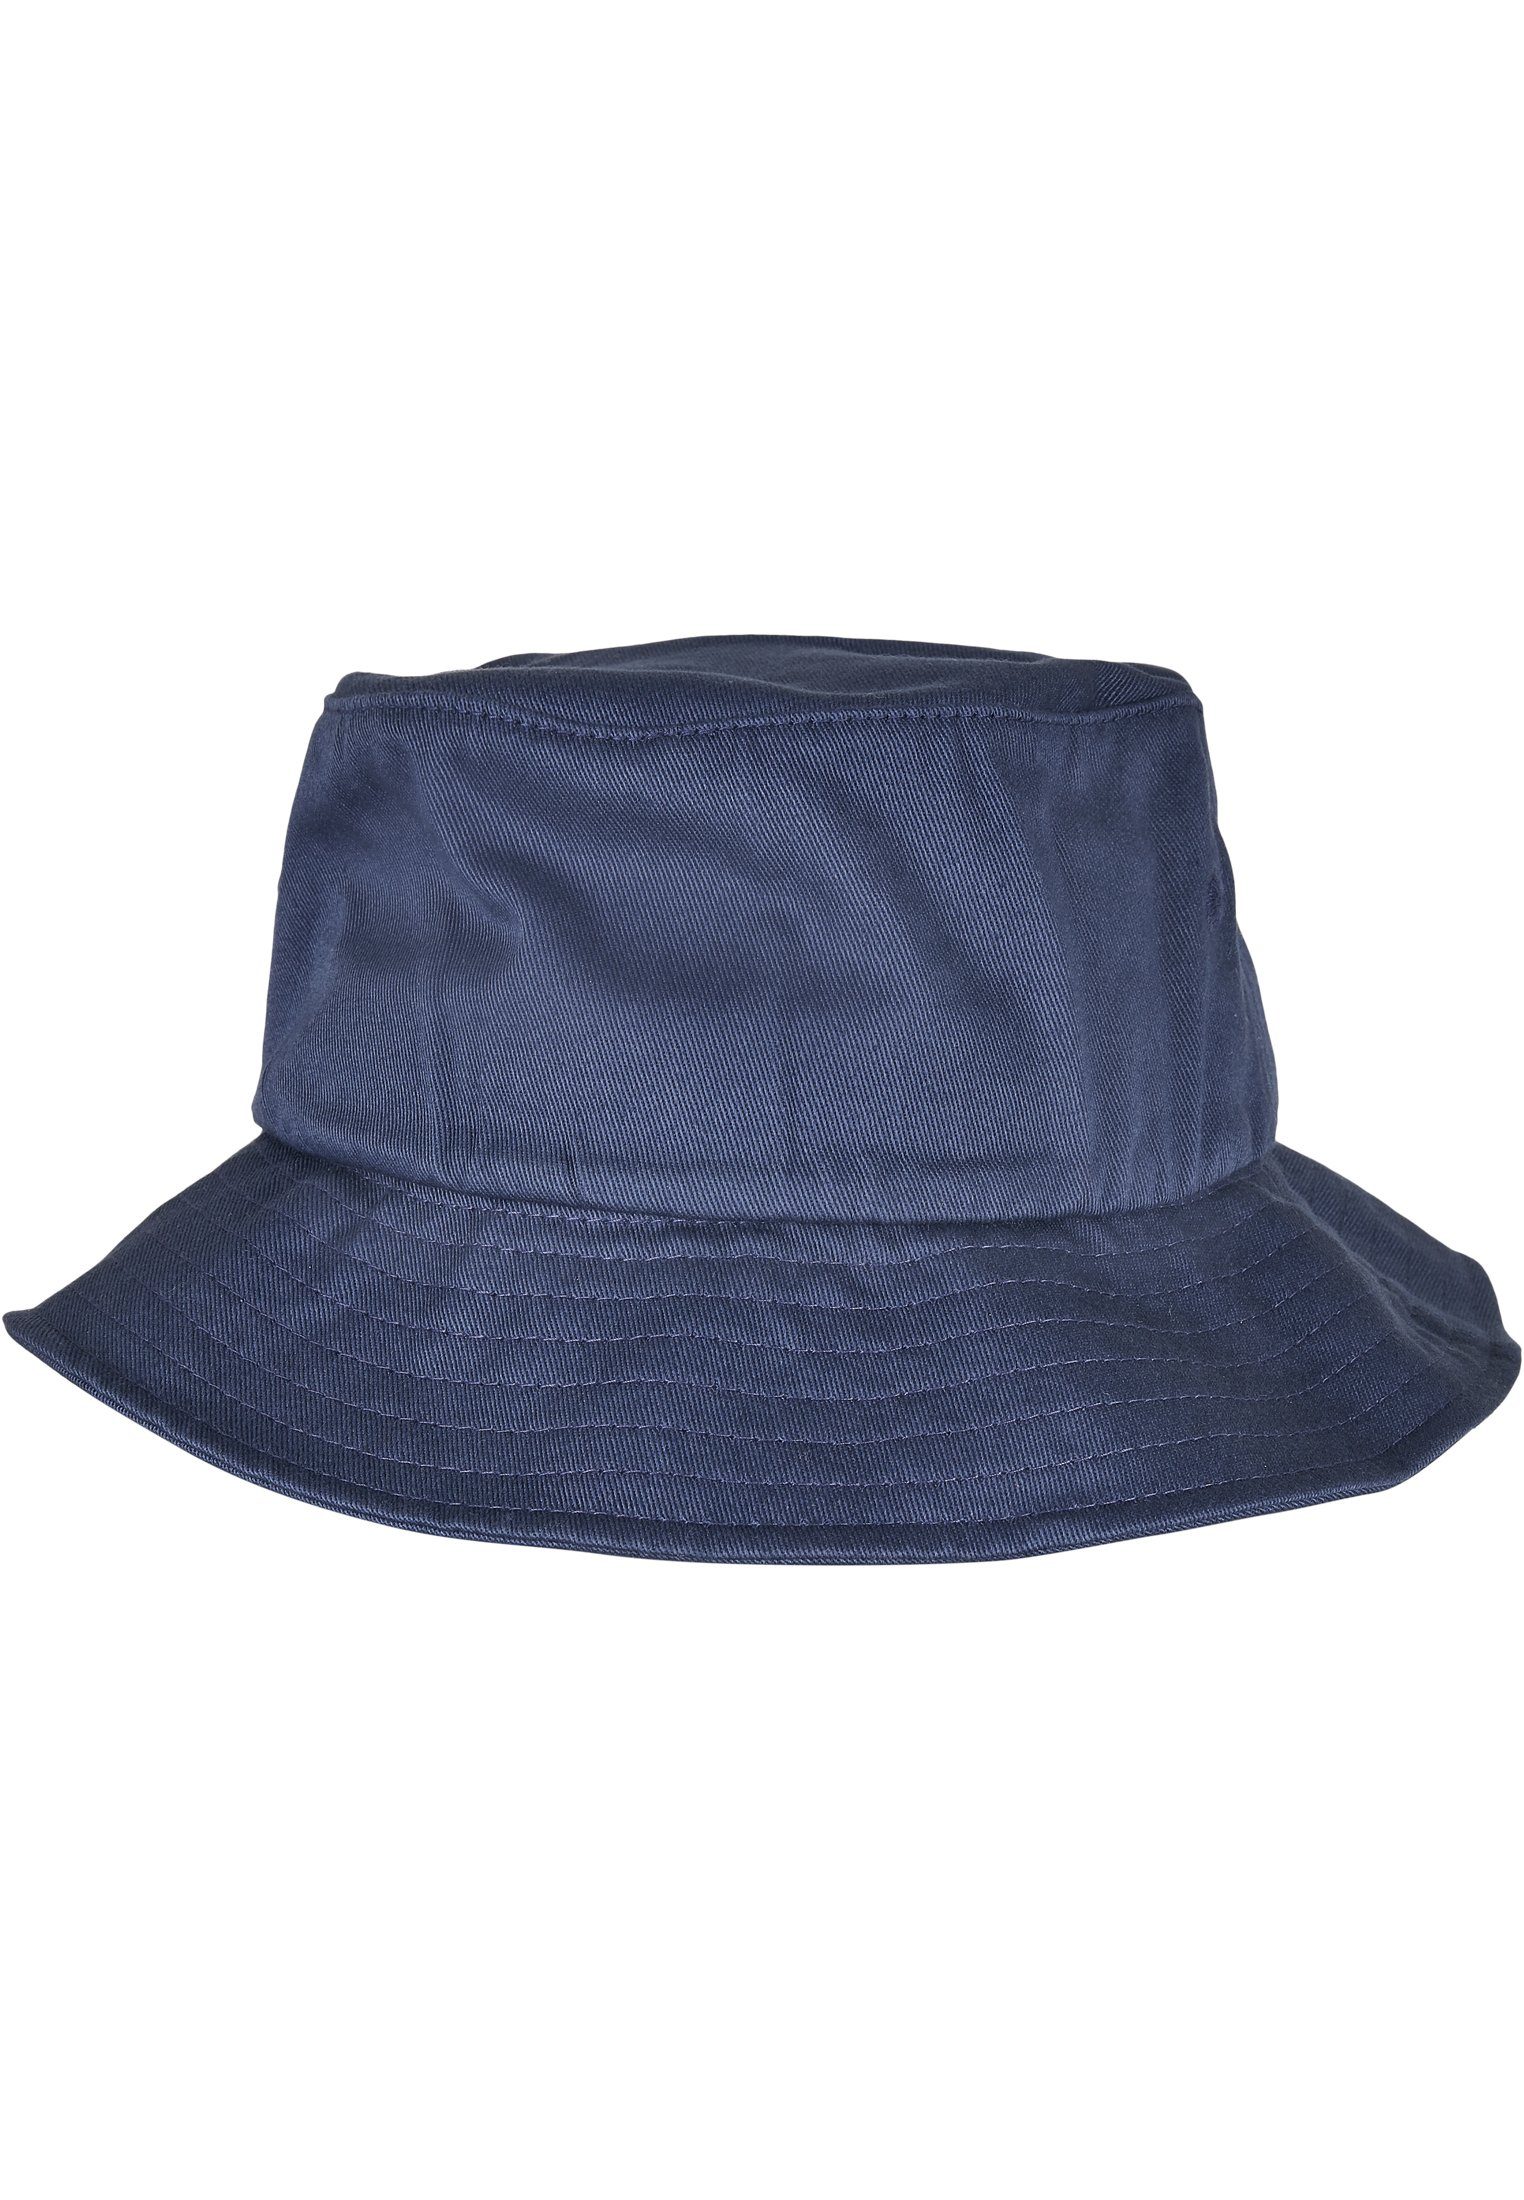 Organic Accessoires Flex Flexfit navy Hat Bucket Cotton Cap